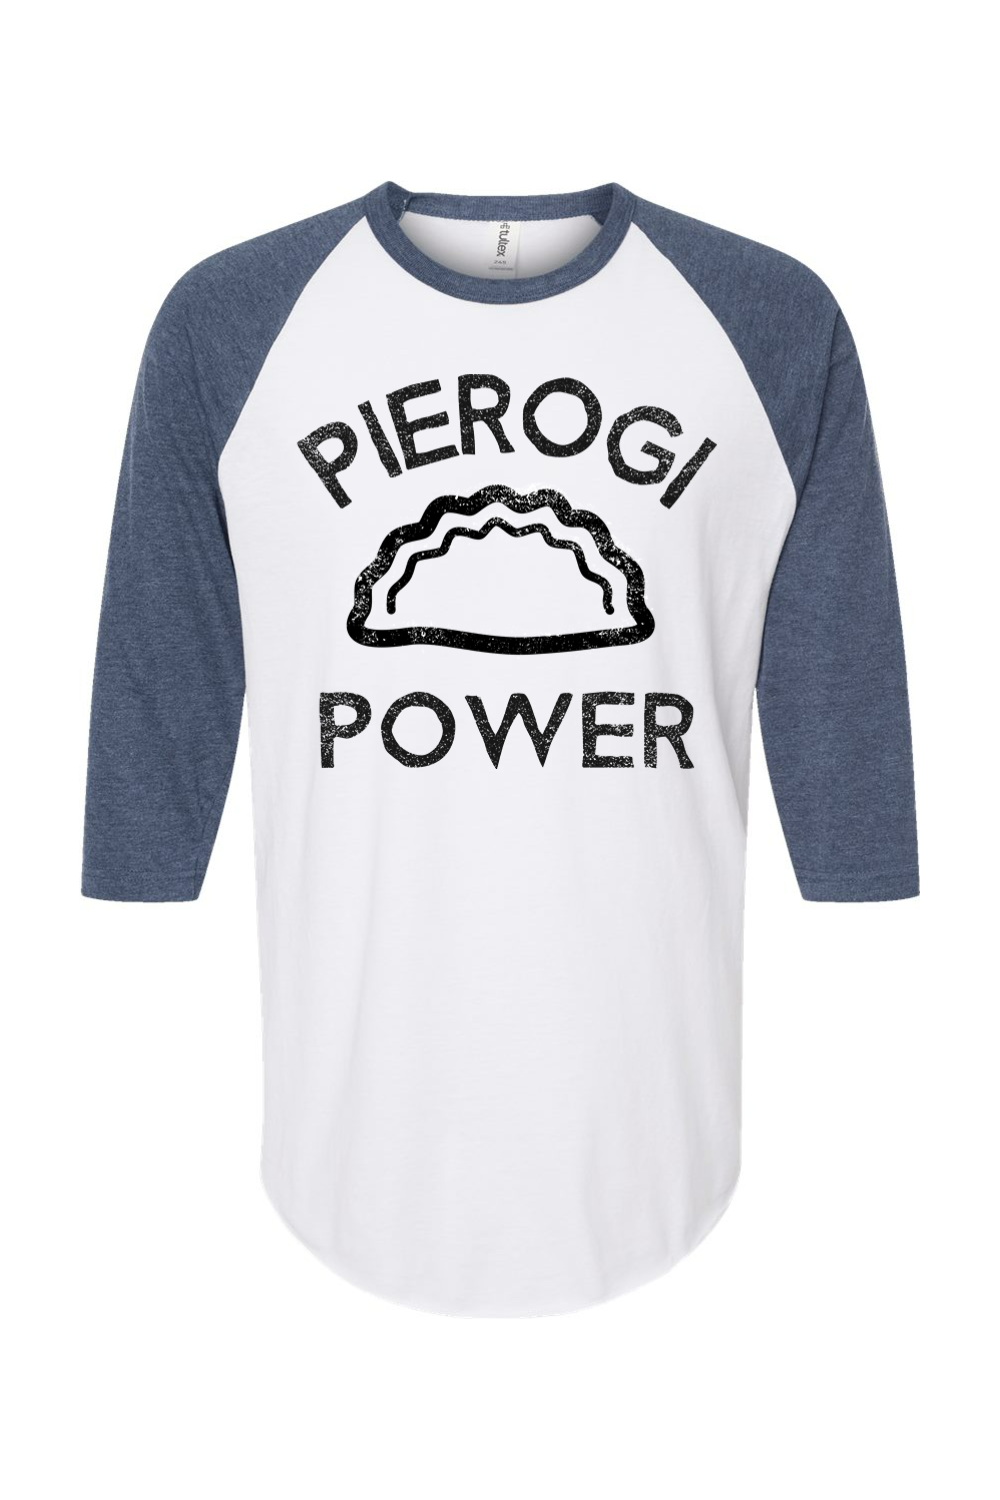 Pierogi Power - Raglan T-Shirt - Yinzylvania